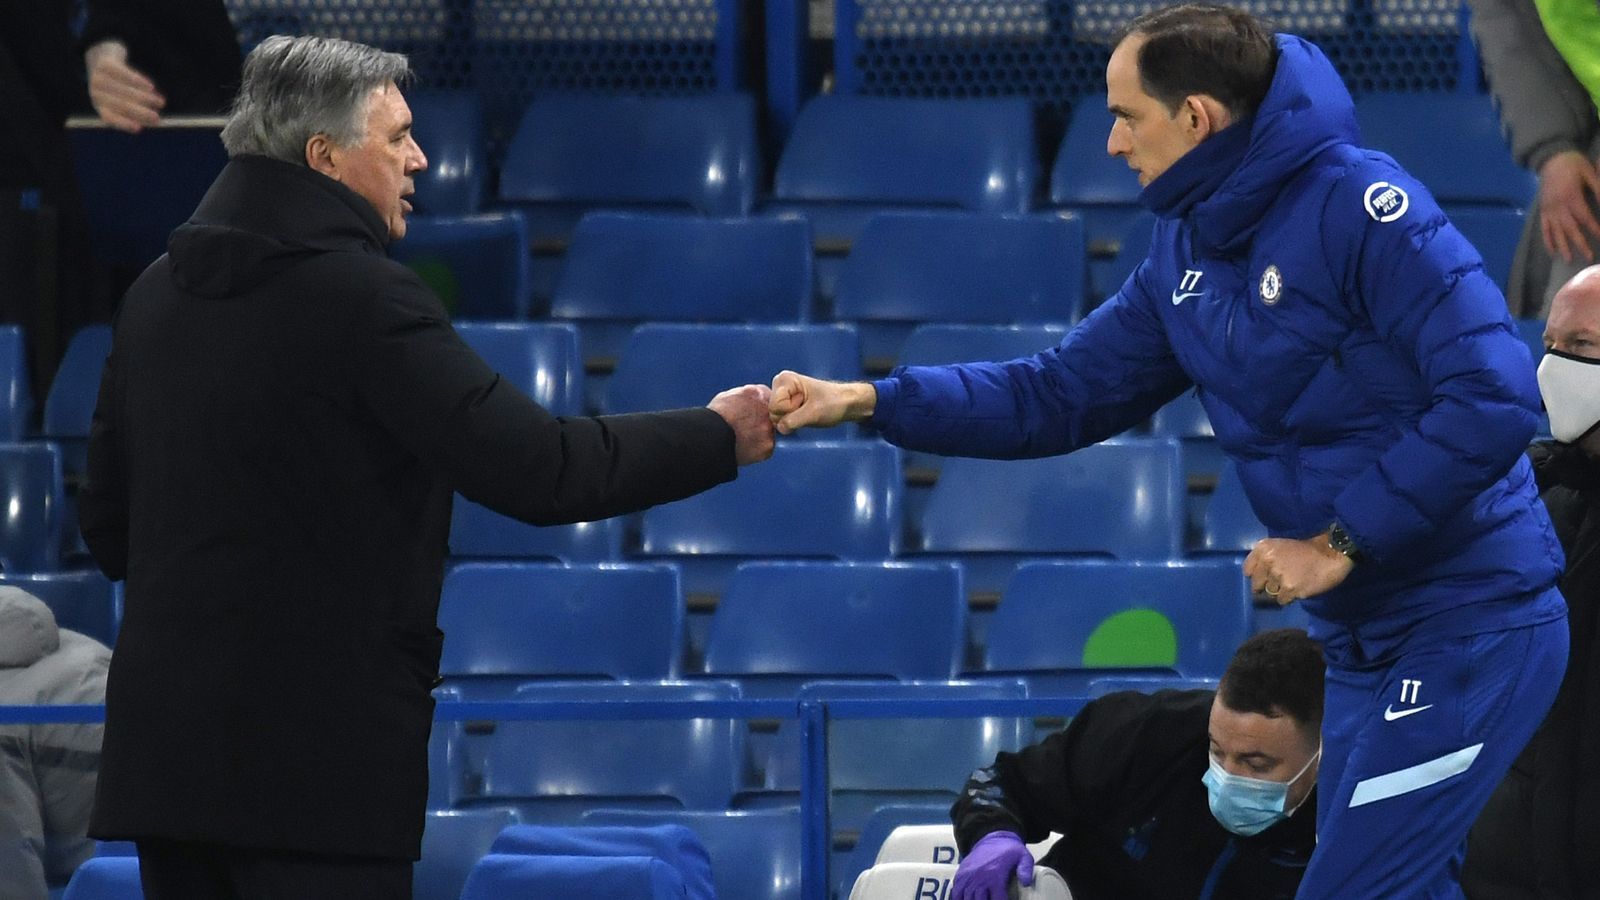 
                <strong>Carlo Ancelotti (FC Everton)</strong><br>
                Vier Tage später schlägt der FC Chelsea gegen den nächsten Top-Trainer zu: Am 8. März gewinnen die "Blues" gegen den vom früheren Bayern-Coach Carlo Ancelotti betreuten FC Everton 2:0.
              